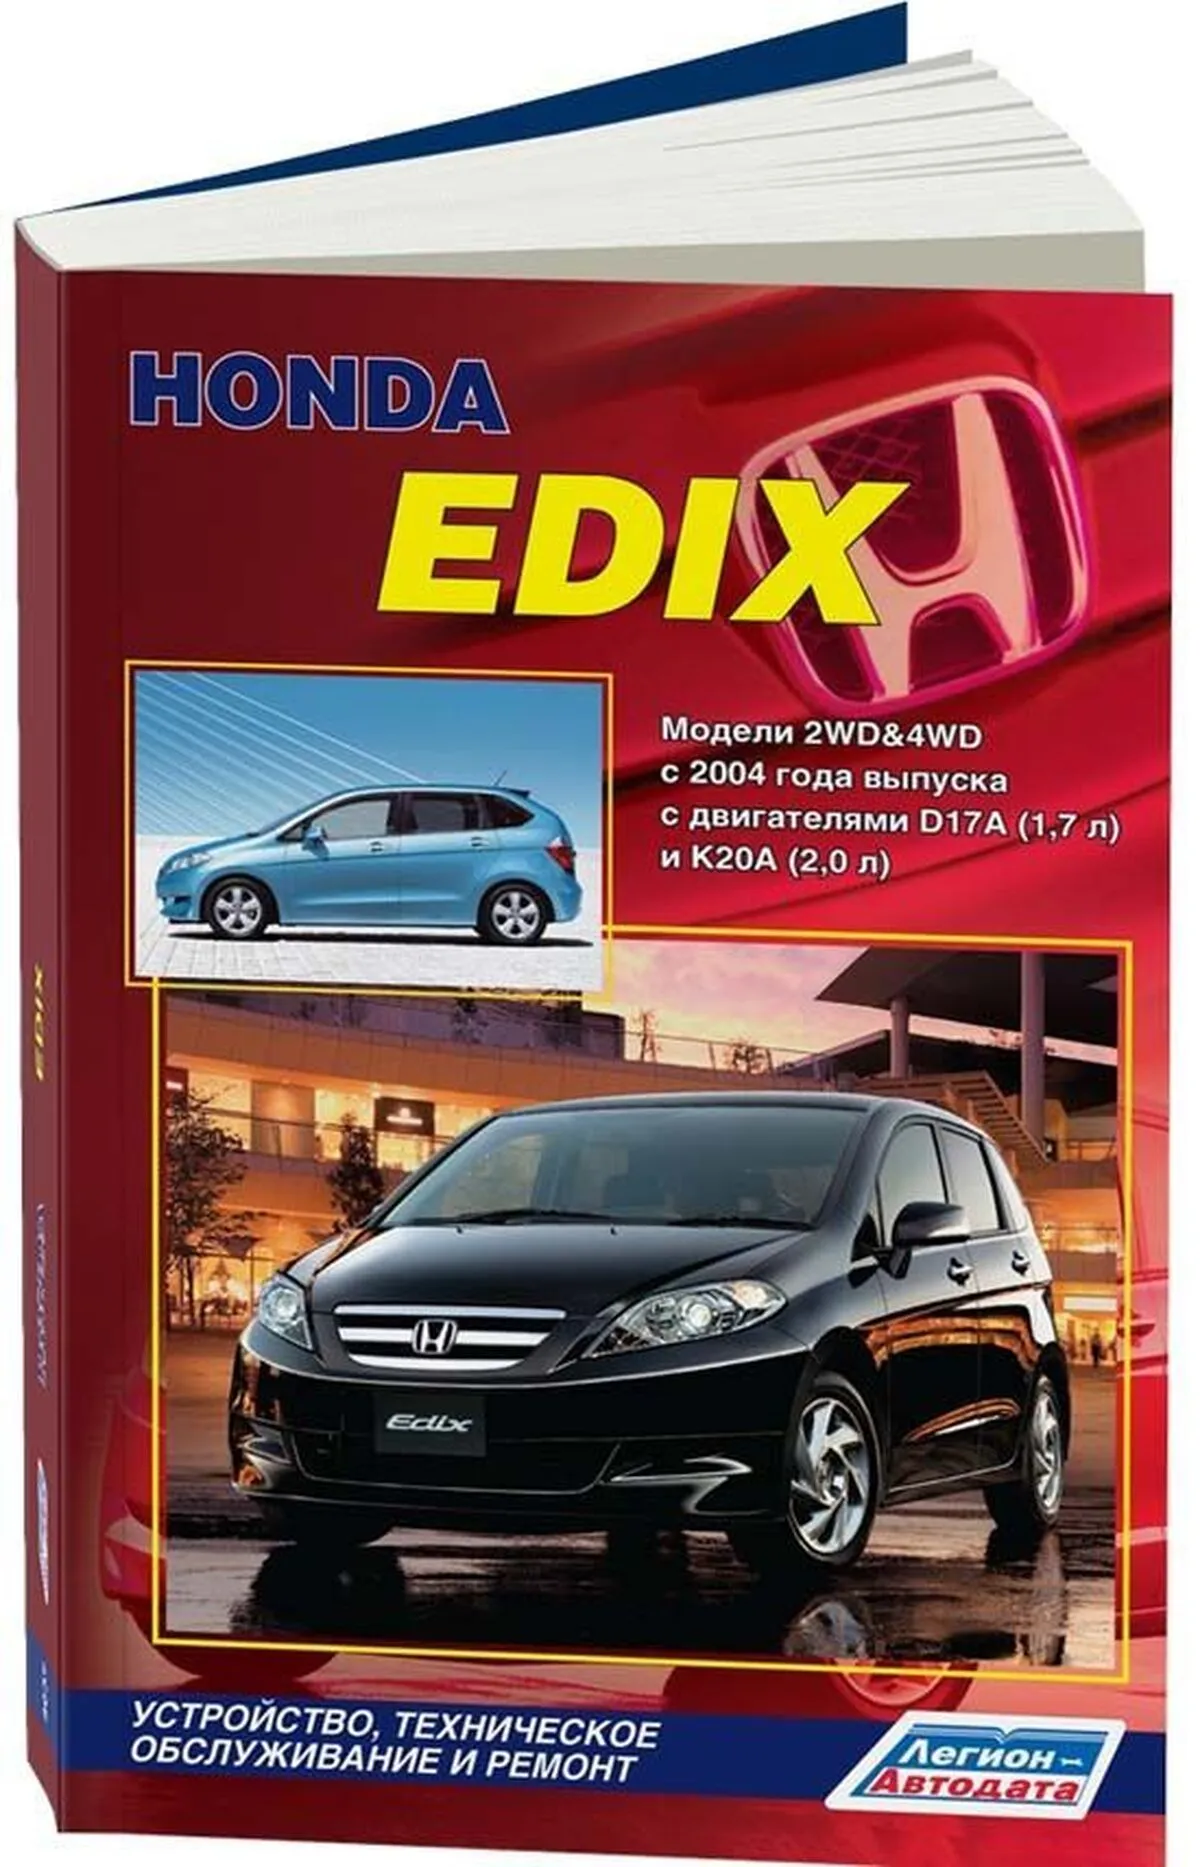 Книга: HONDA EDIX (б) с 2004 г.в., рем., экспл., то | Легион-Aвтодата